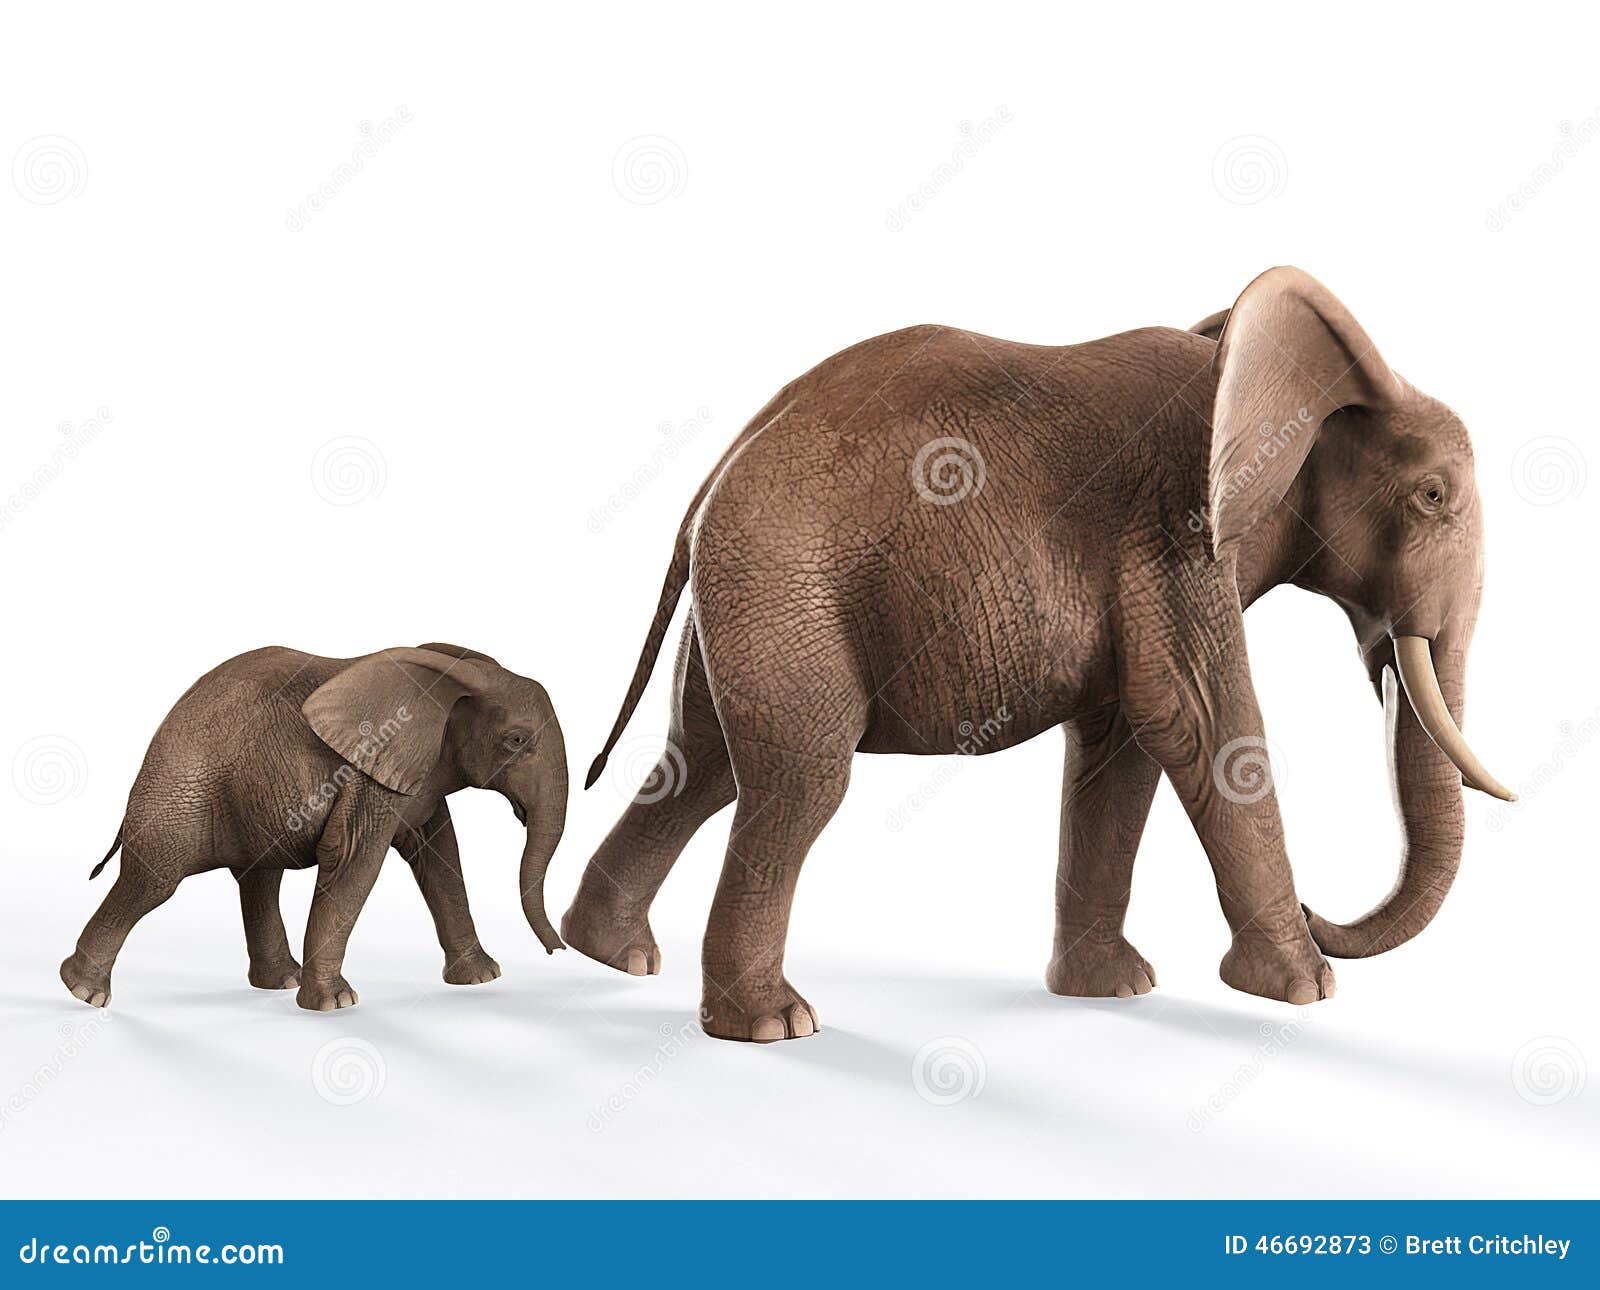 Elephants Walking Baby Elephant Stock Illustration Illustration Of Procession Wildlife